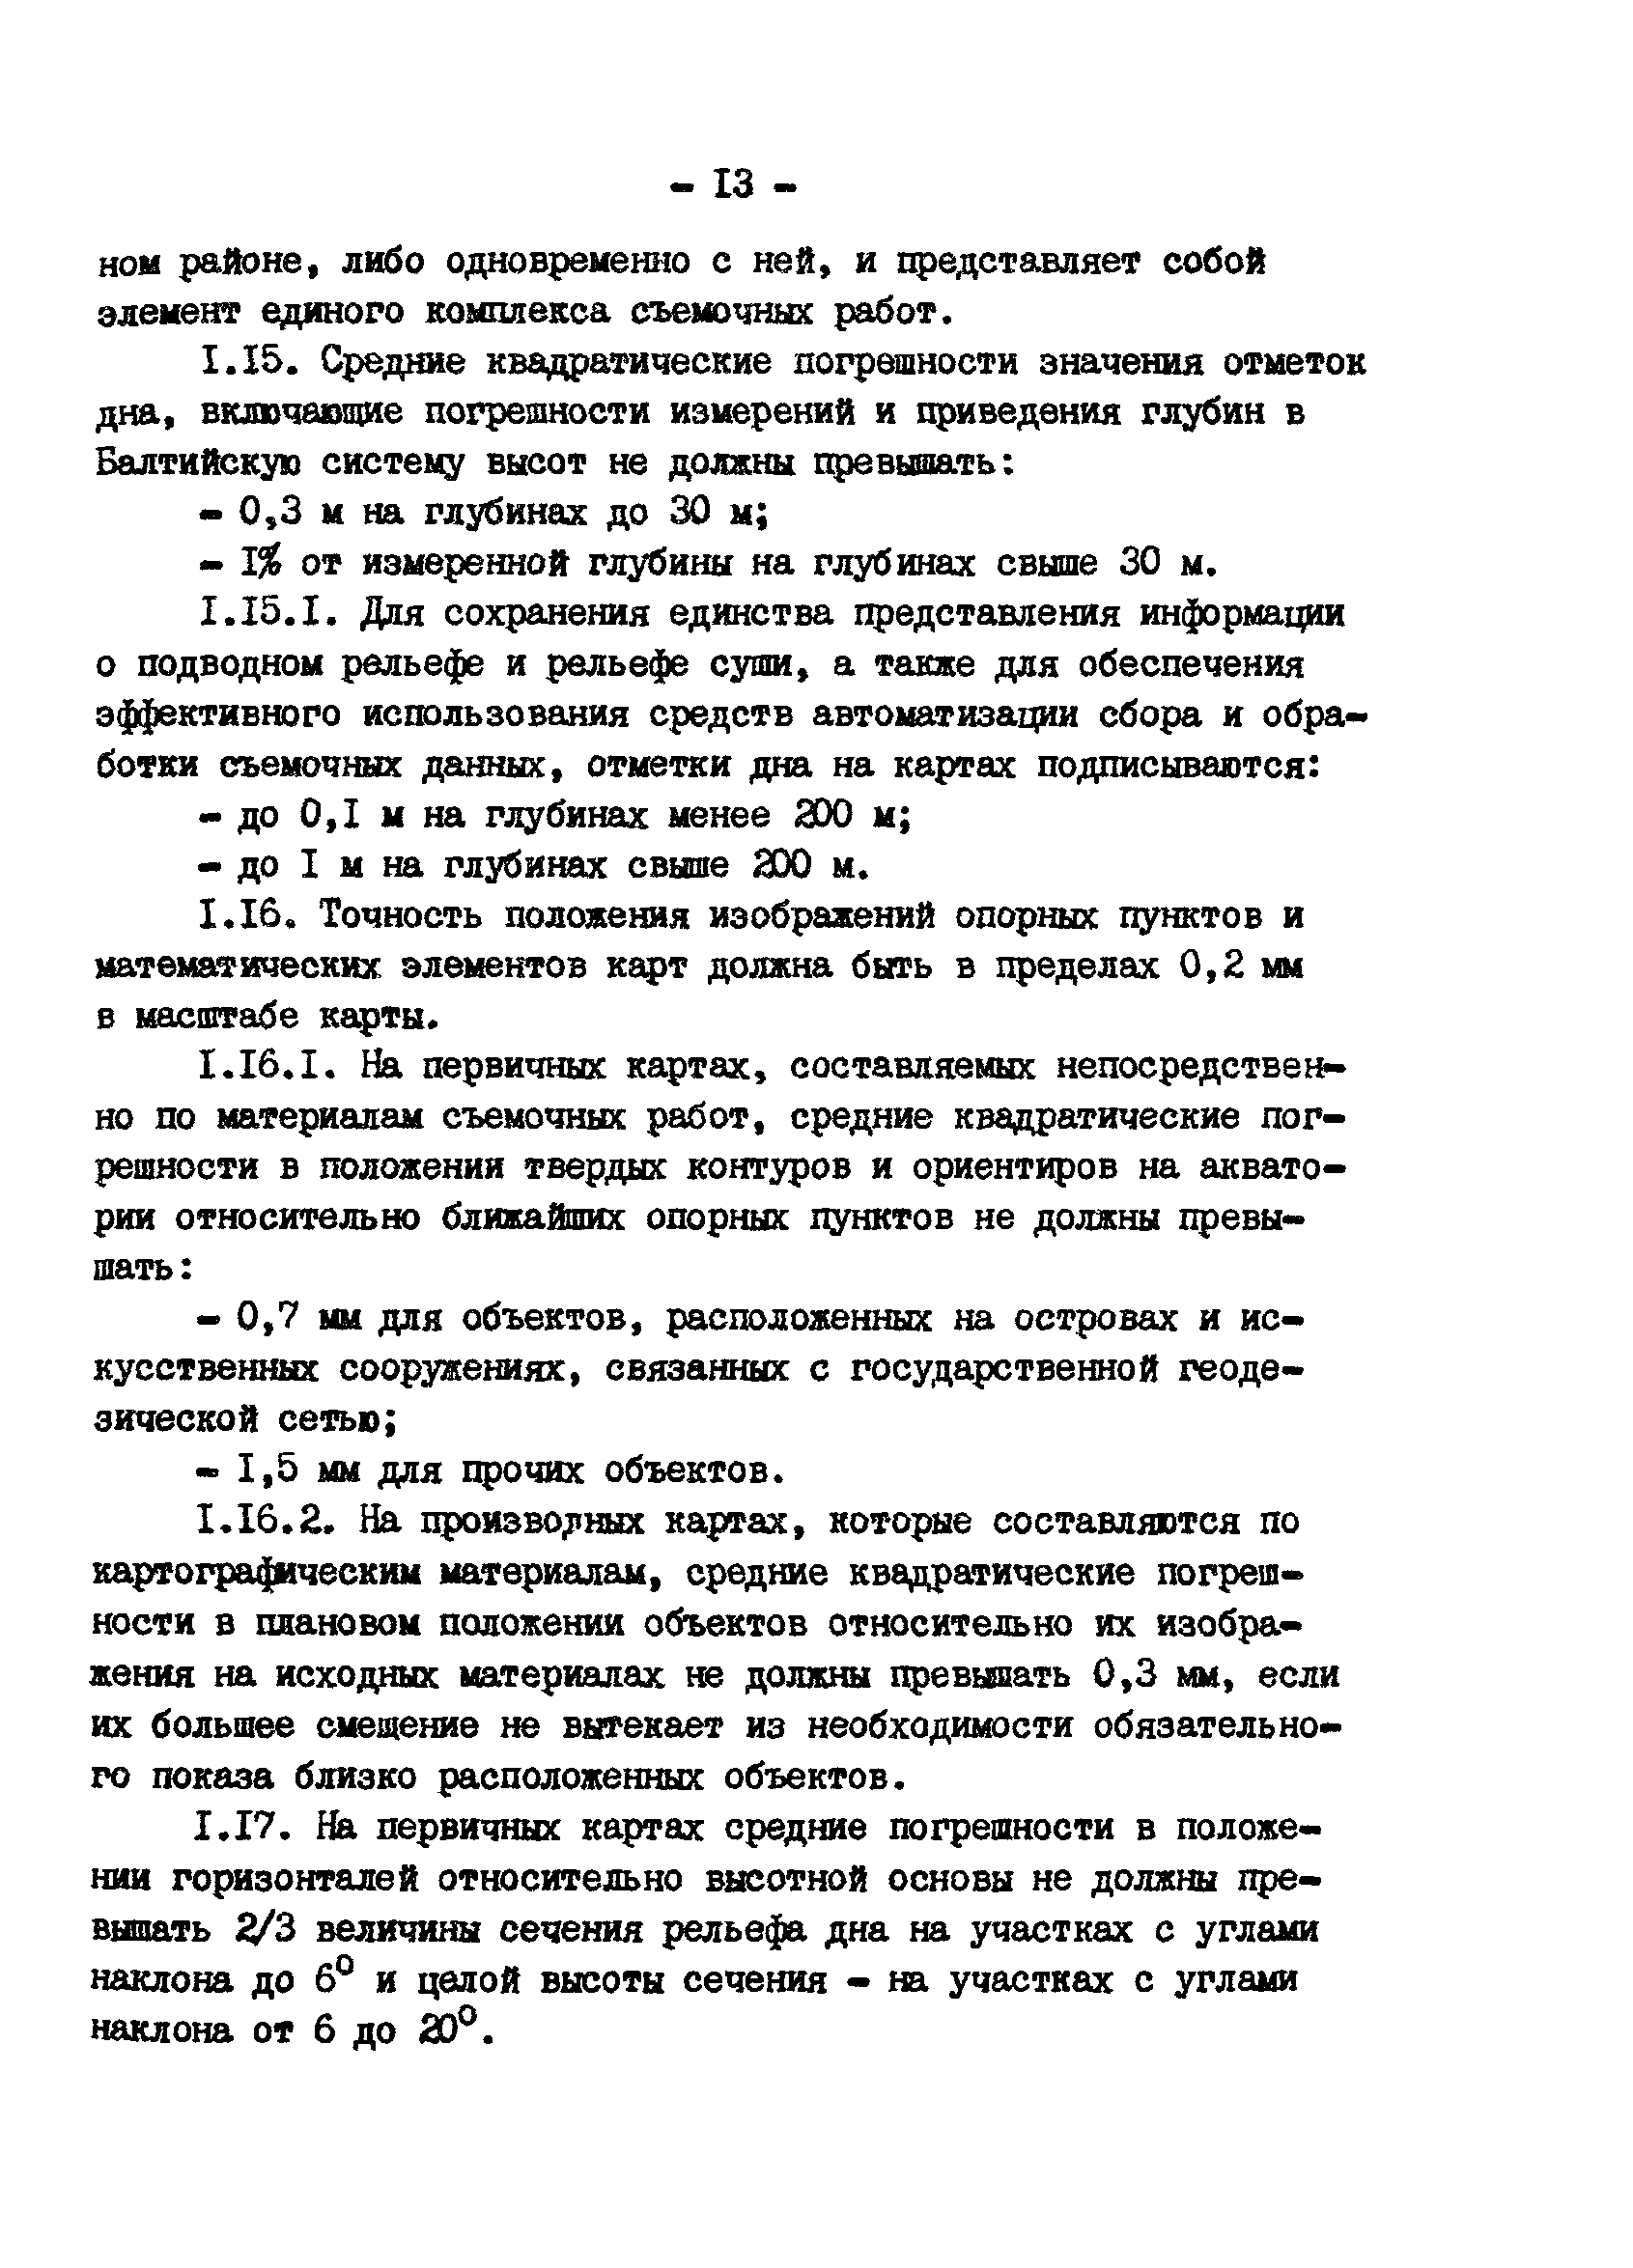 ГКИНП 11-152-85